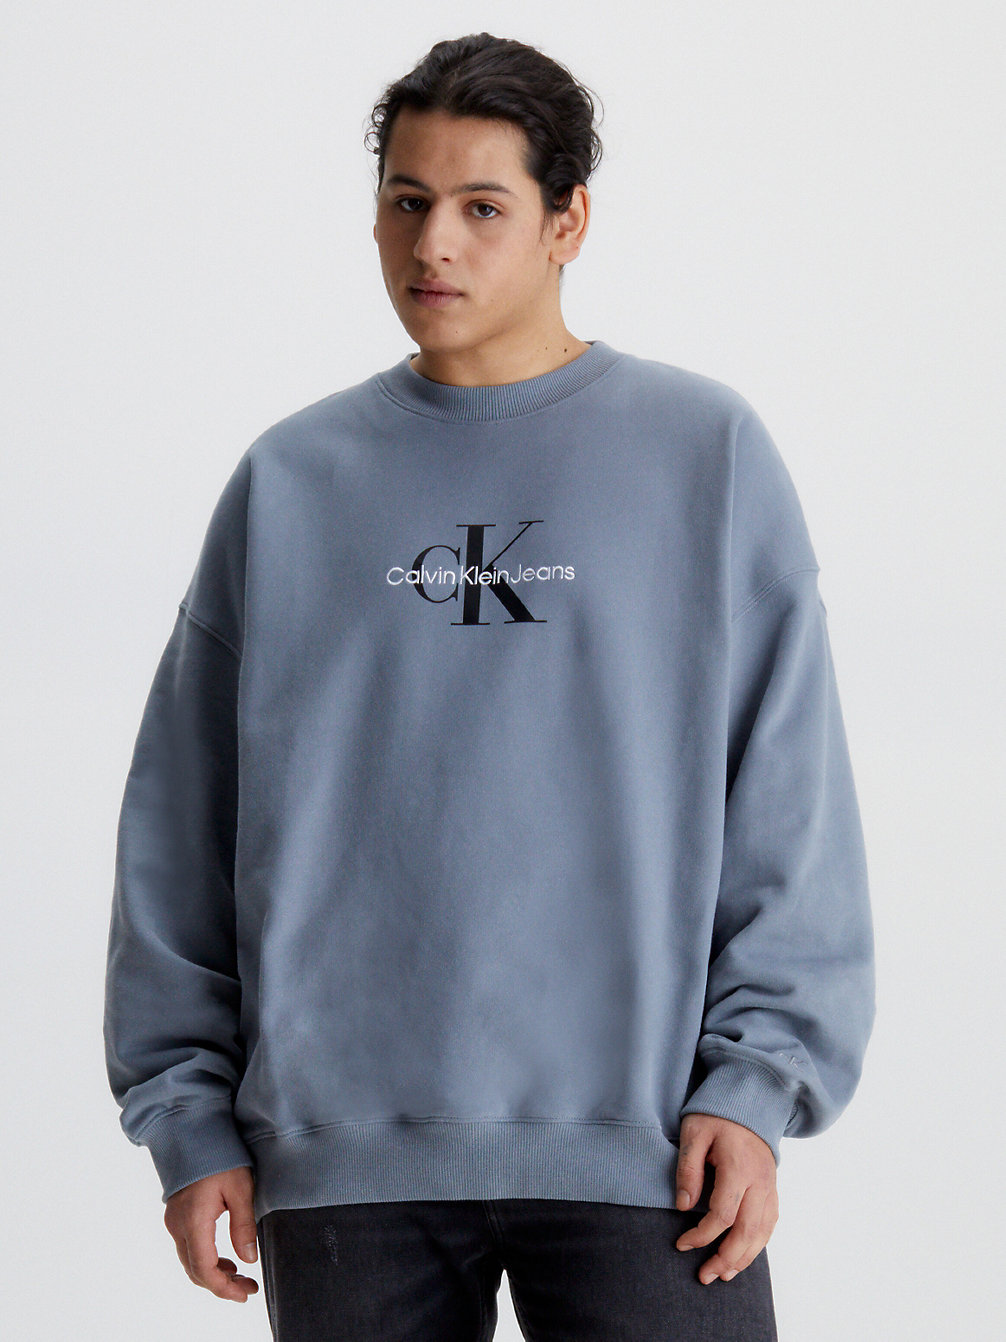 OVERCAST GREY Monogramm-Sweatshirt In Großen Größen undefined Herren Calvin Klein